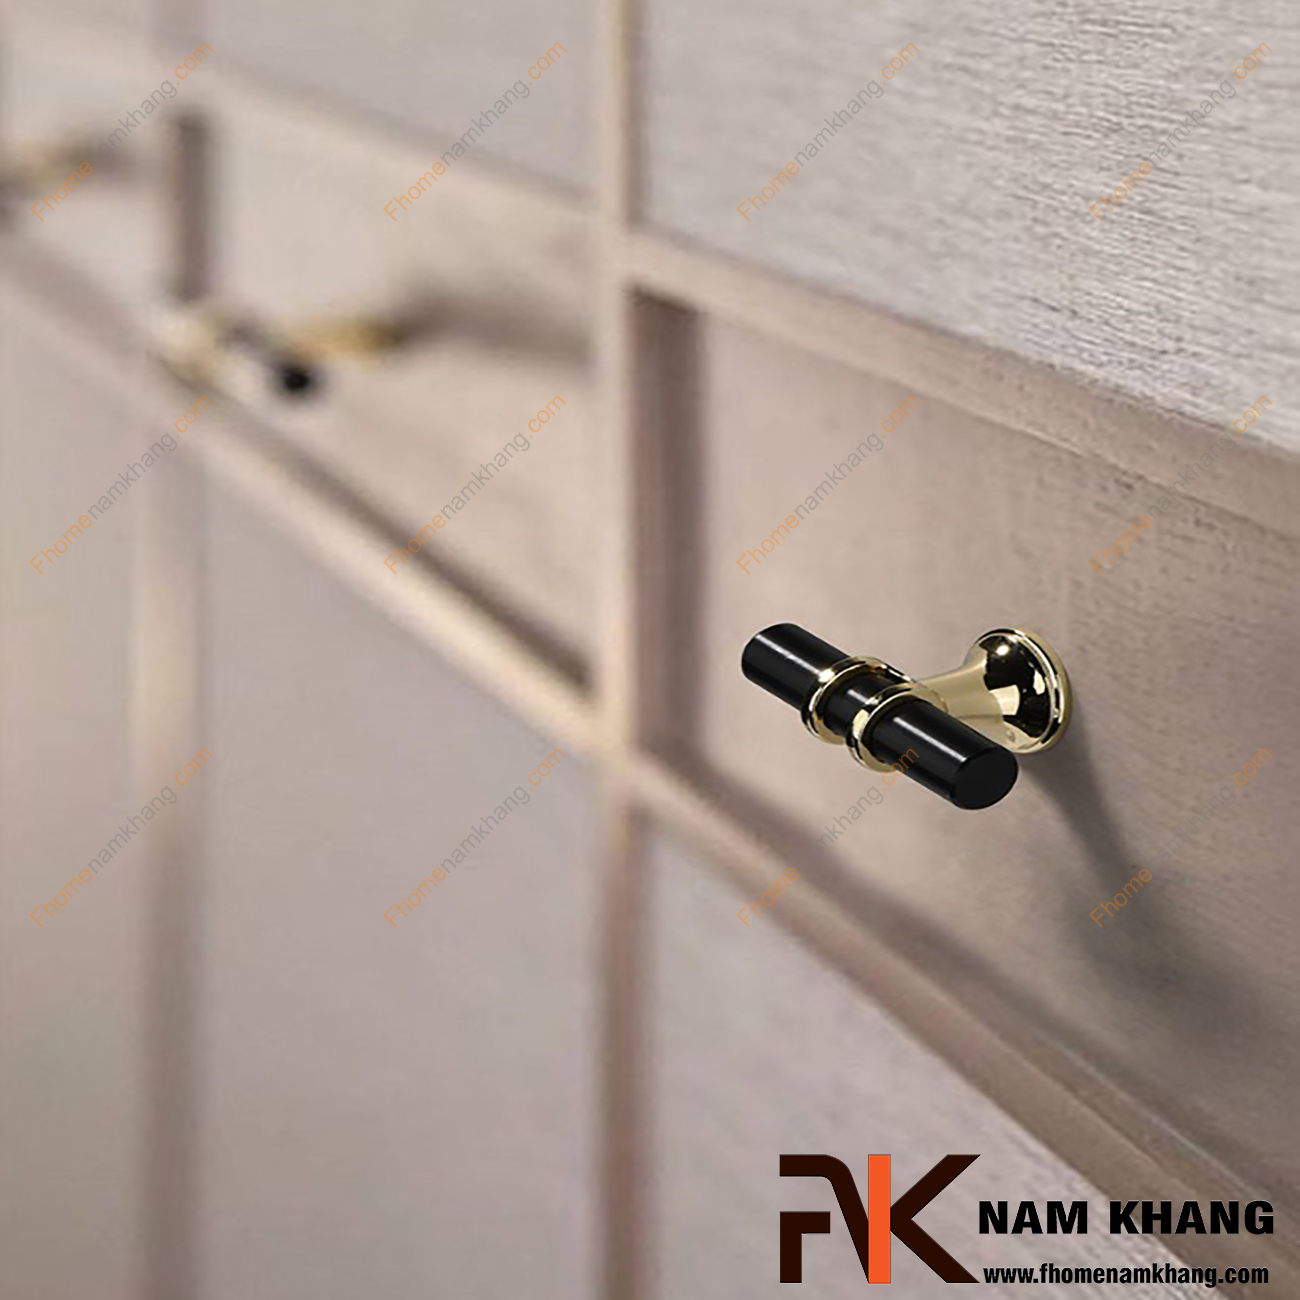 Núm nắm tủ dạng chữ T cổ điển màu đen NK207-D là sản phẩm núm nắm tủ đặc trưng chuyên dùng cho các dòng tủ bếp, ngăn kéo, ngăn bàn, tủ nội thất.